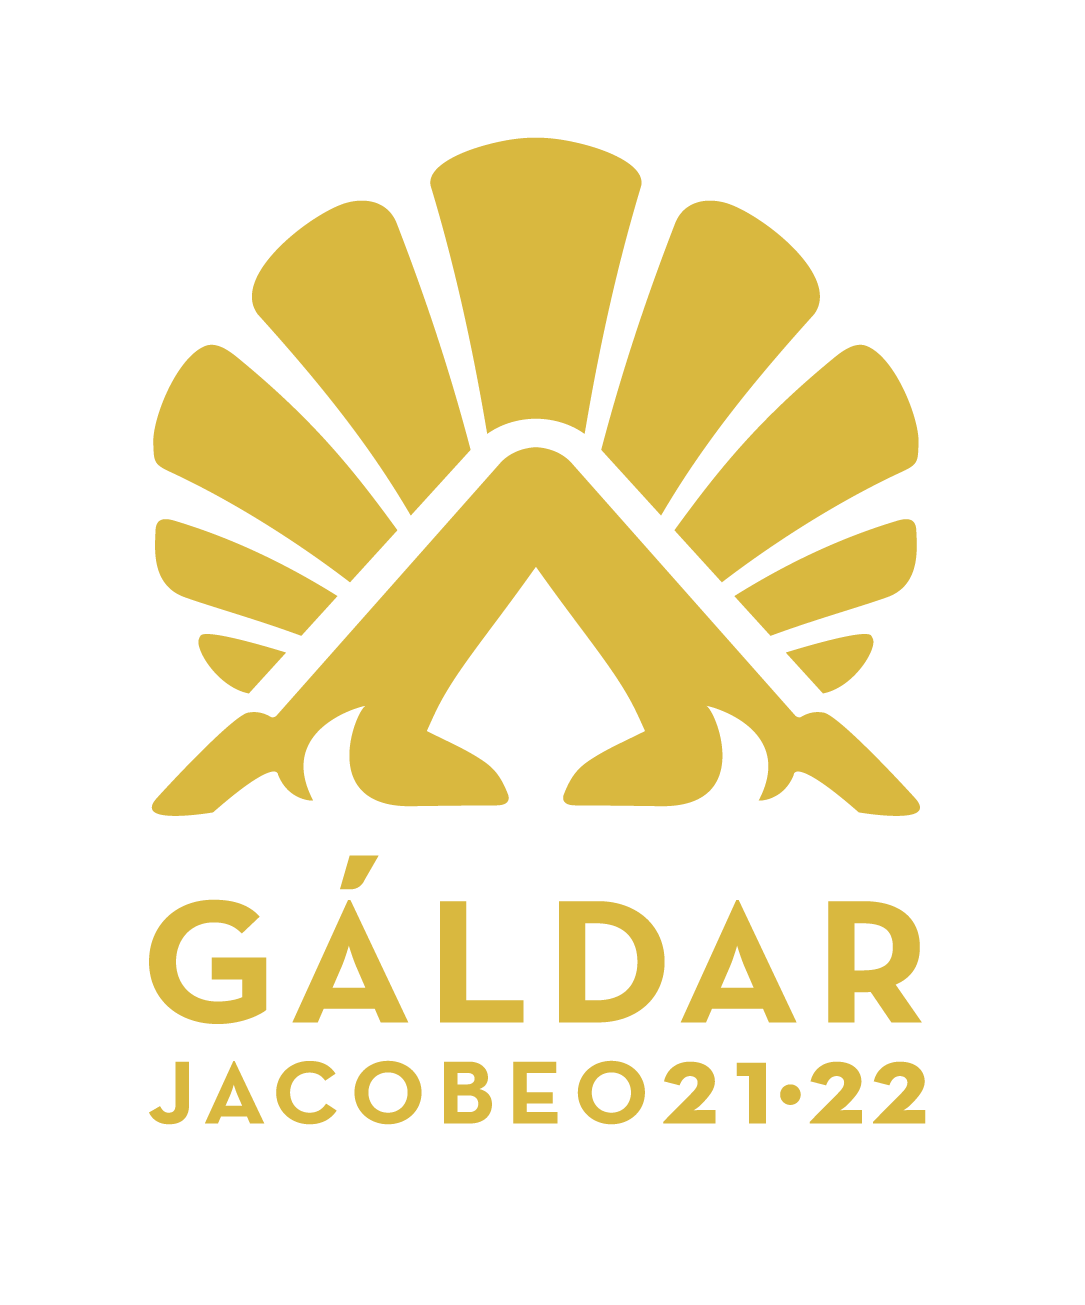 JACOBEO21-224